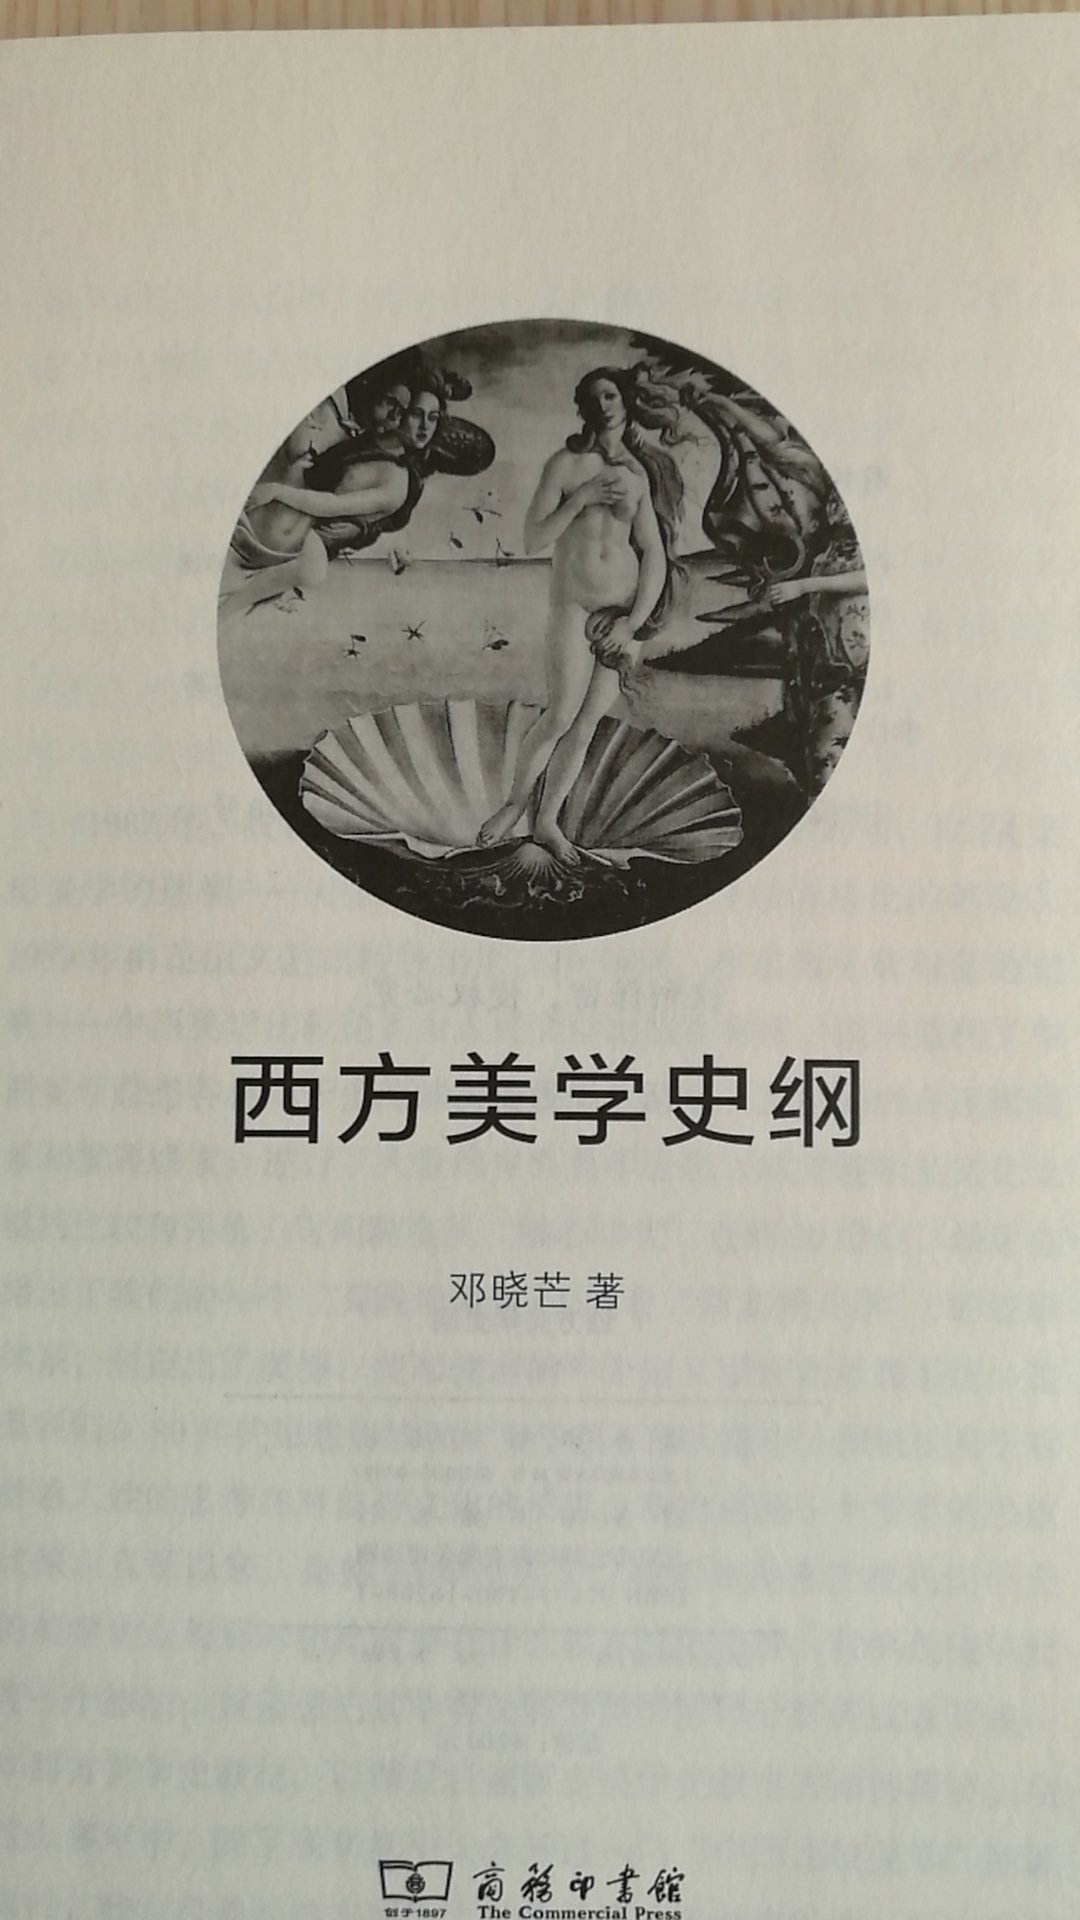 邓老师的书看了很多了，在学术上邓老师很有功力。这本专著用很简洁的语言把西方美学史两千多年的思想历程纲要式的表达出来，是继《黄与蓝的交响》后美学方面的又一力作。